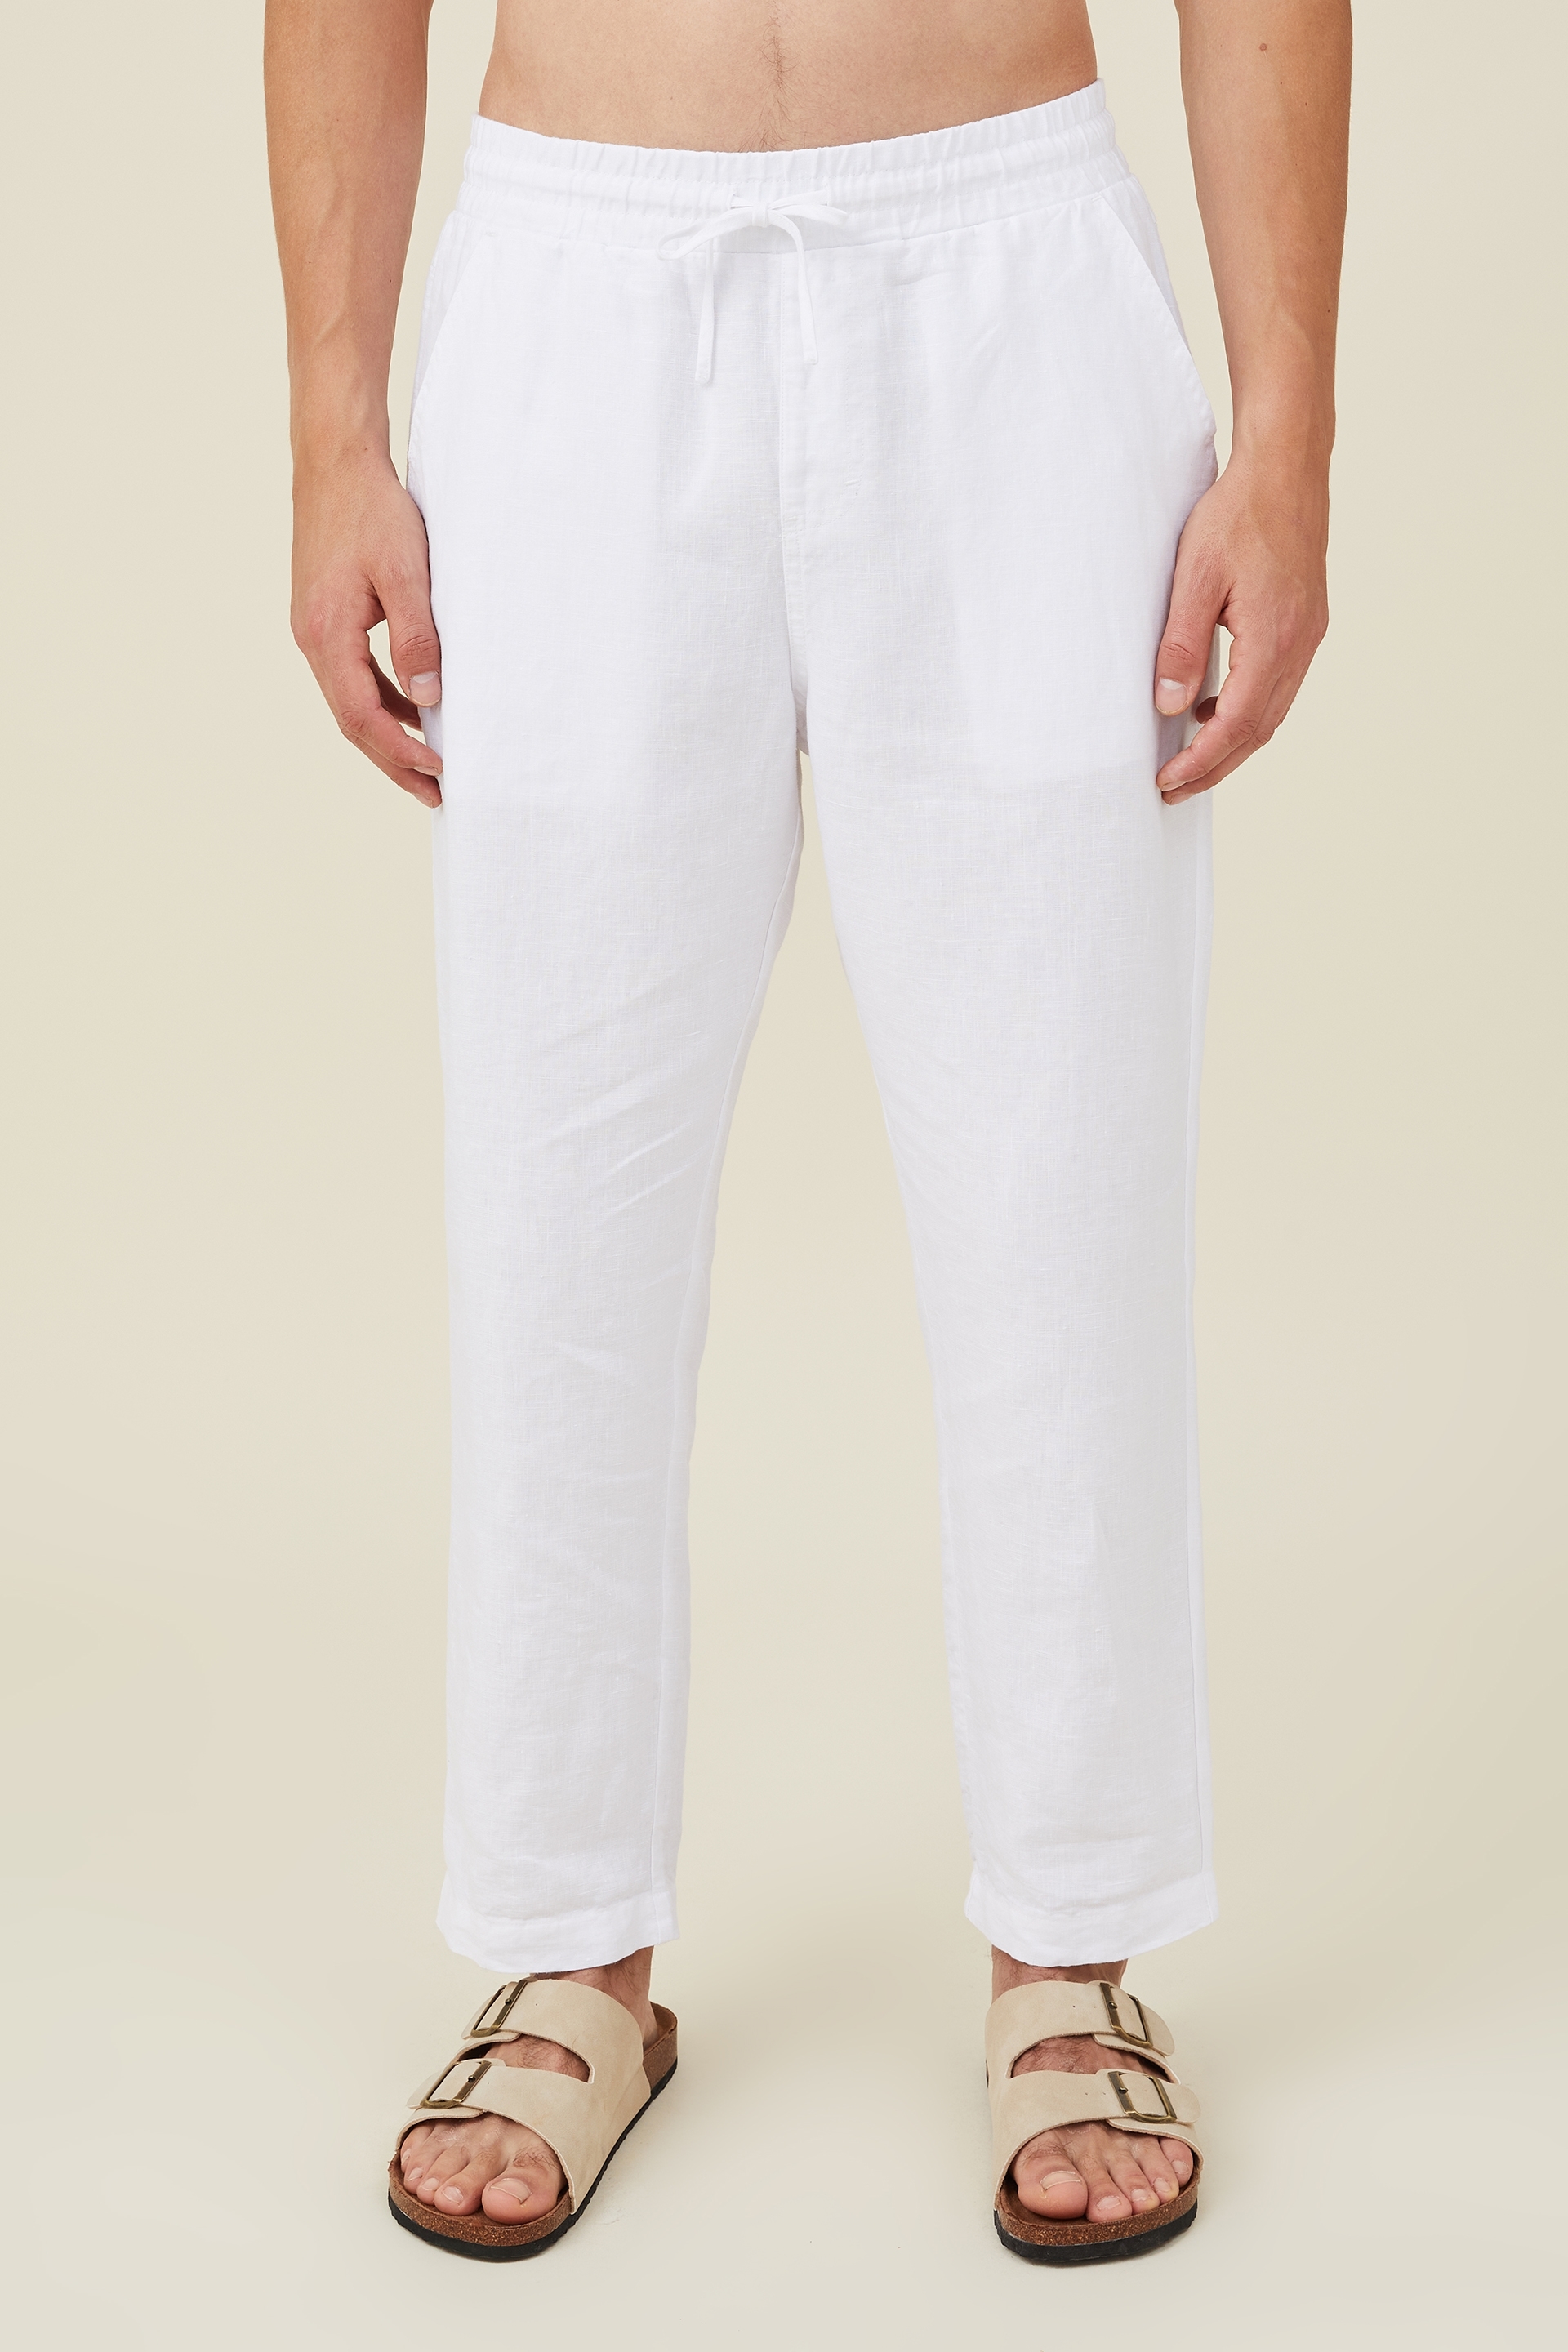 AUDATE Men's Pants Summer Beach Trousers Cotton Linen Trouser Casual  Lightweight Drawstring Yoga Pant Green Medium